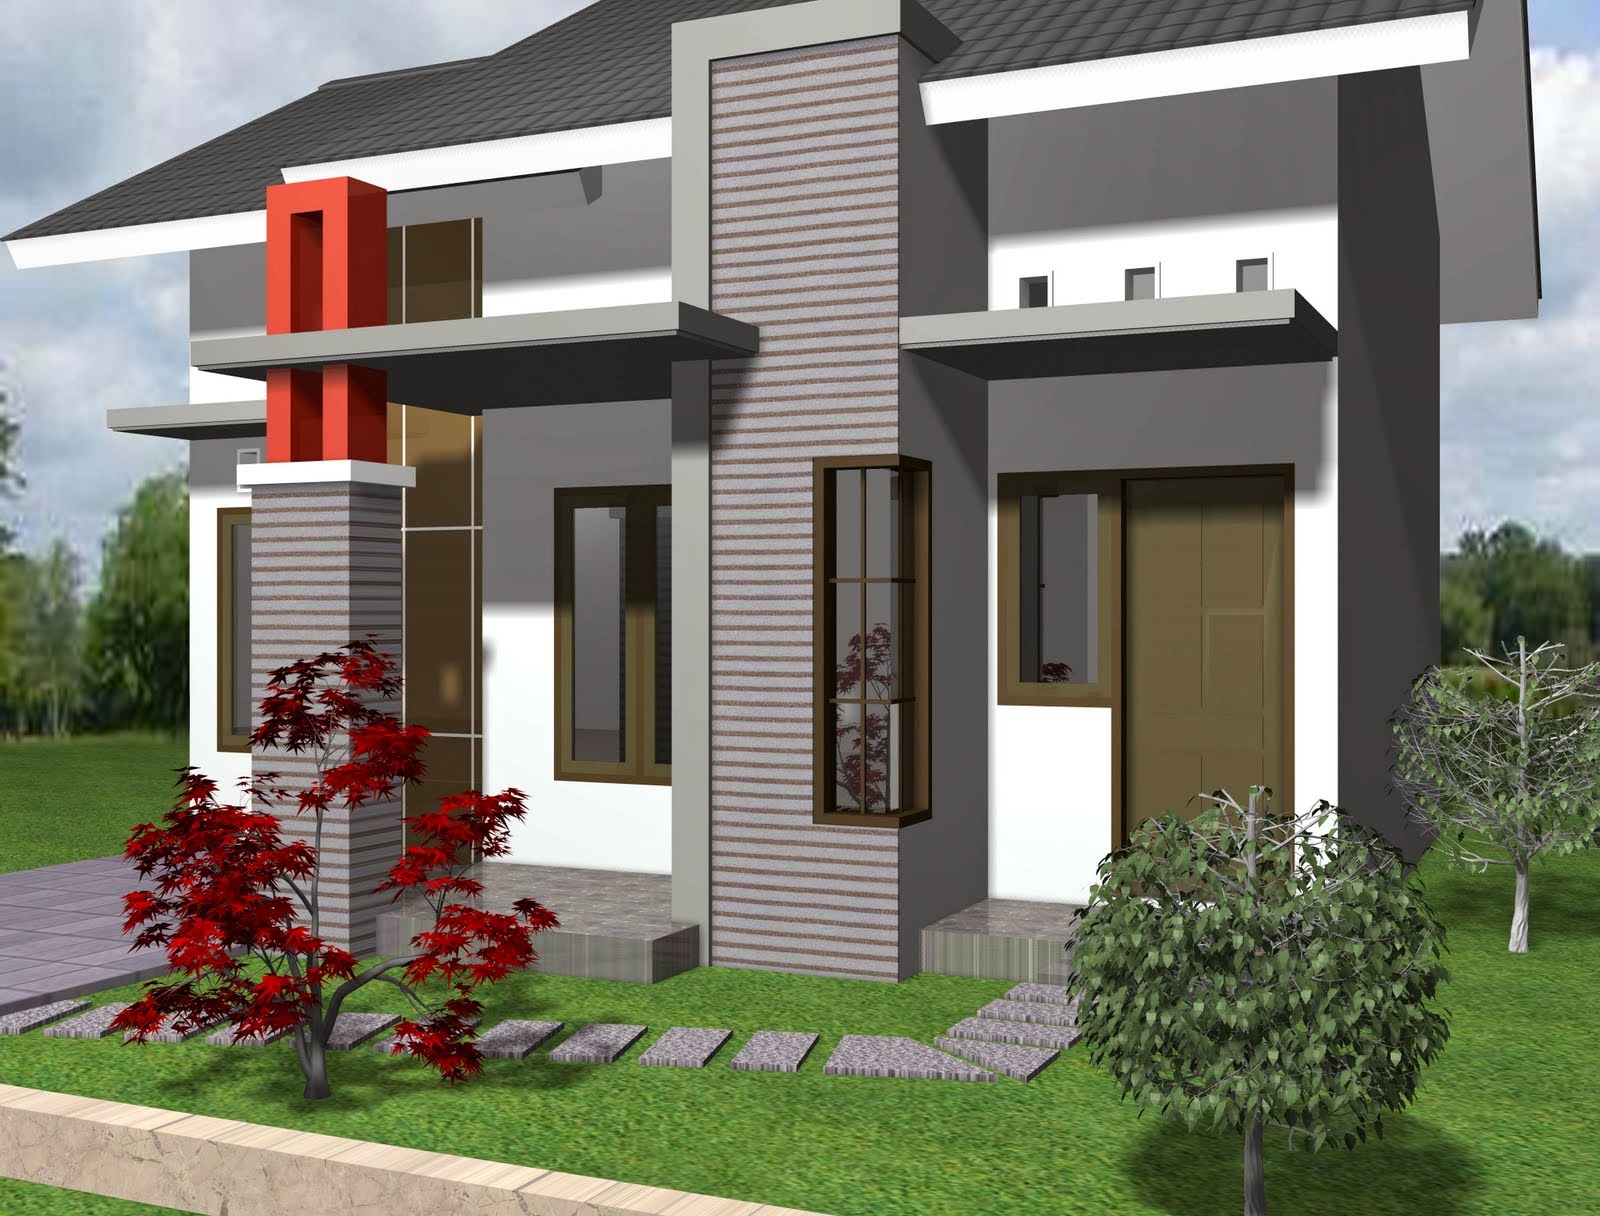 Contoh Desain Rumah Minimalis 1 Lantai Modern Desain Denah Rumah